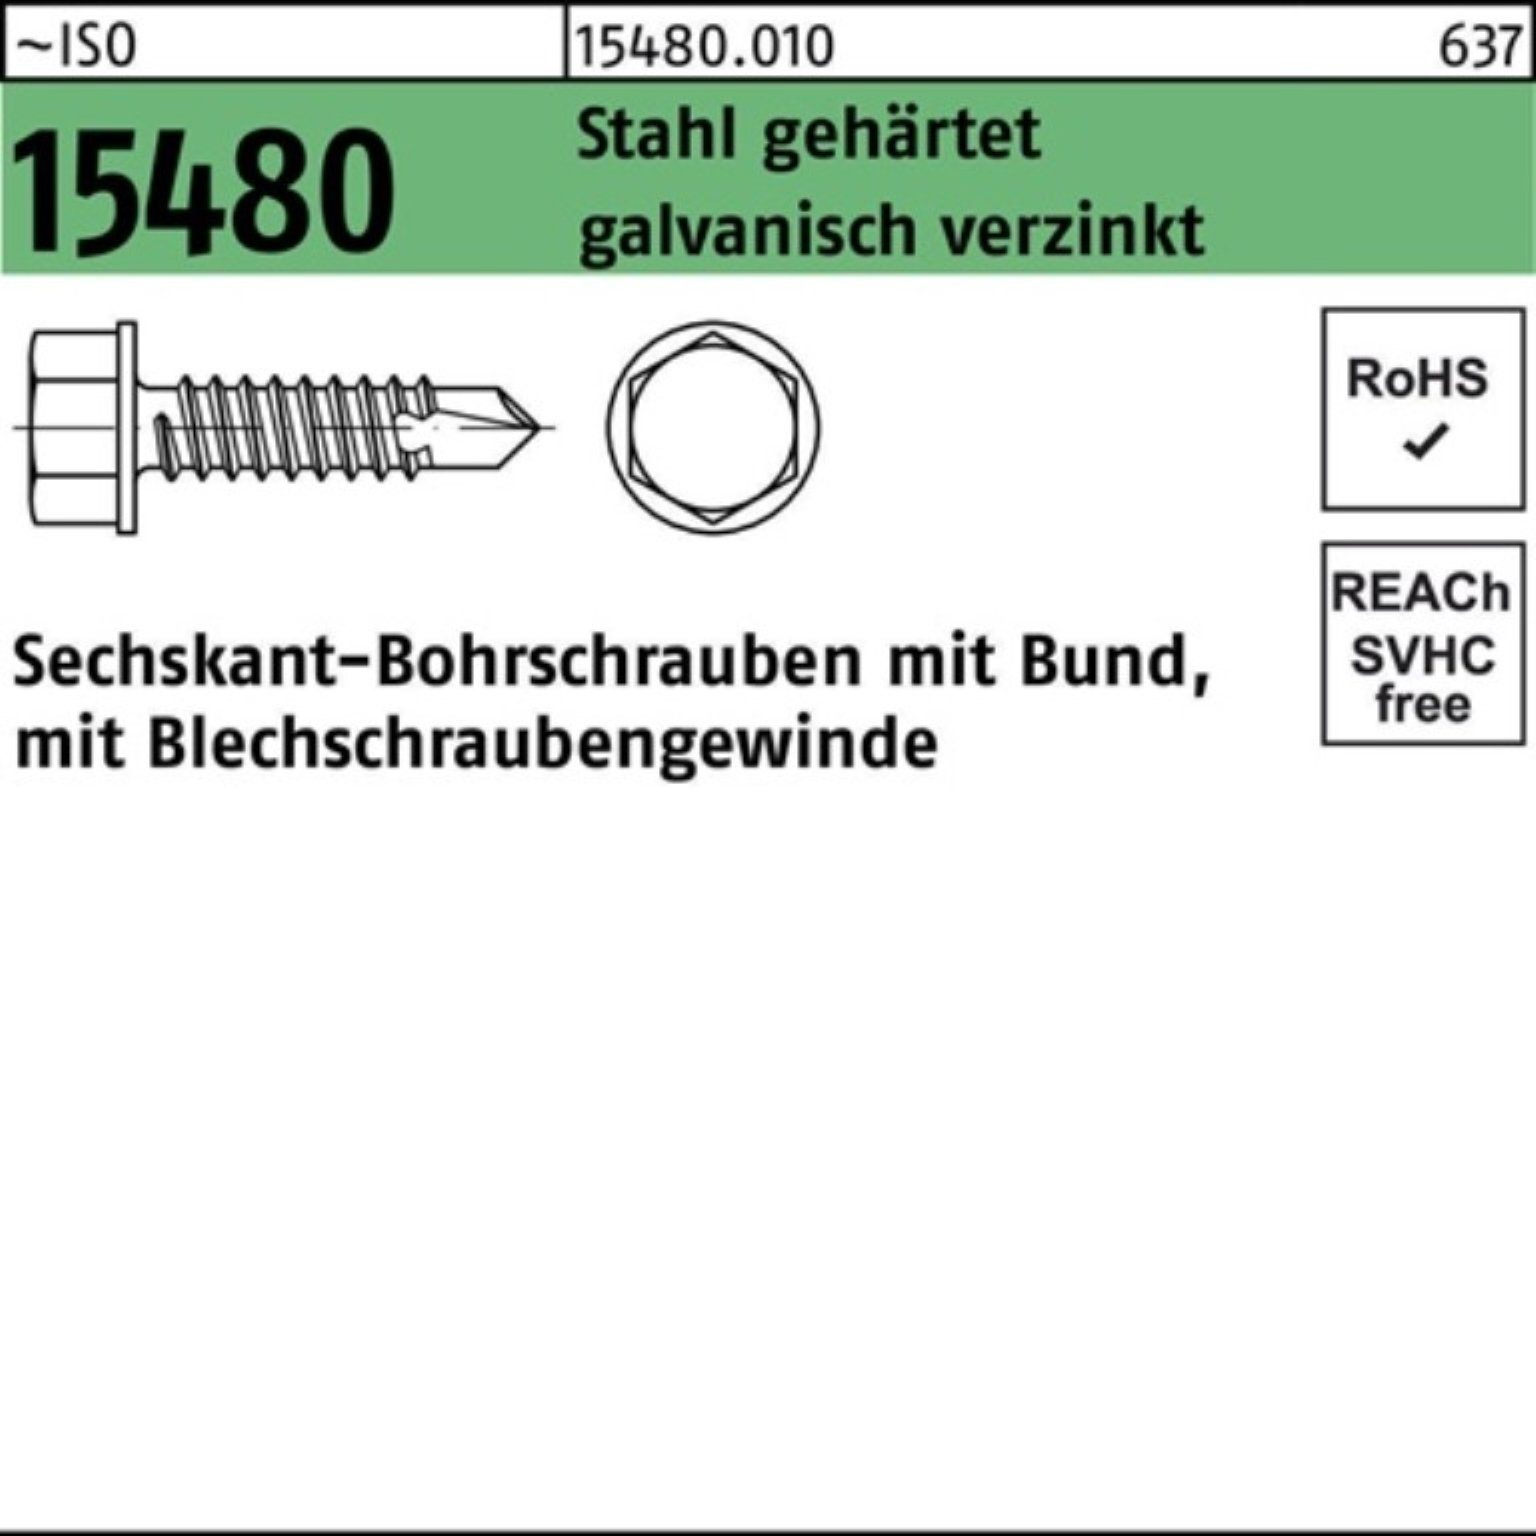 ISO ST Bohrschraube Sechskantbohrschraube 15480 Stahl 250er Pack gehär Bund 6,3x60 Reyher